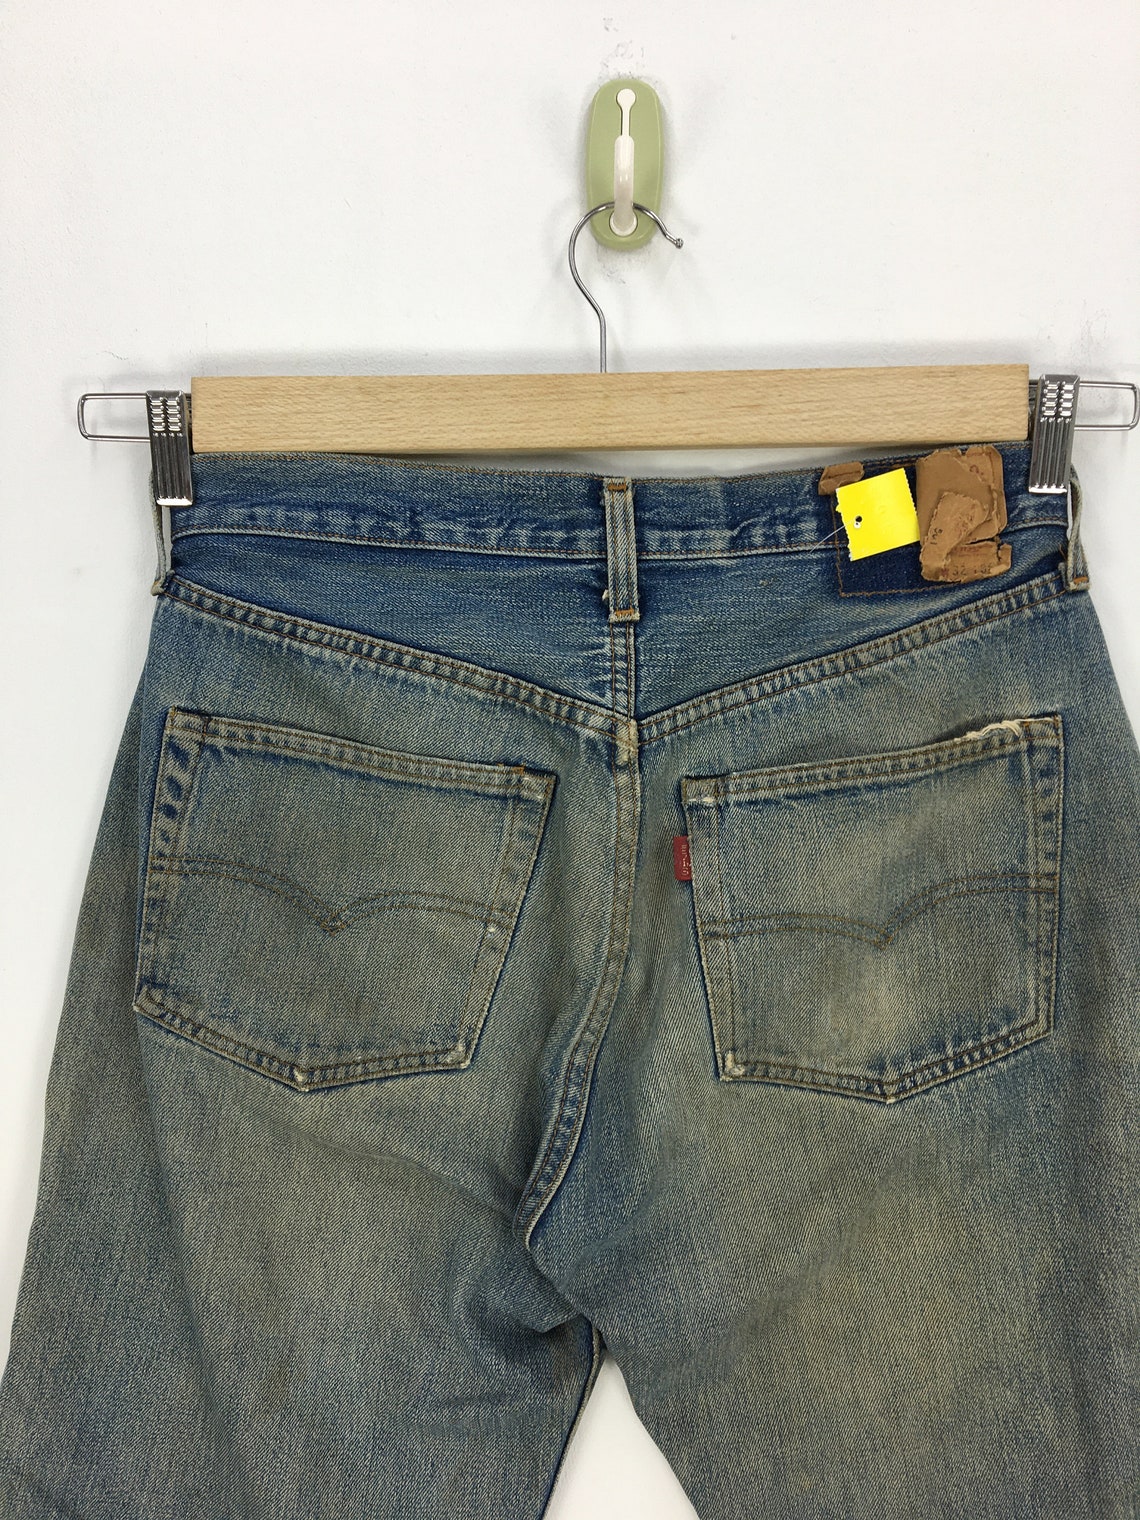 Vintage Levis Jeans Pants Levis 501 Distressed Denim Pants | Etsy